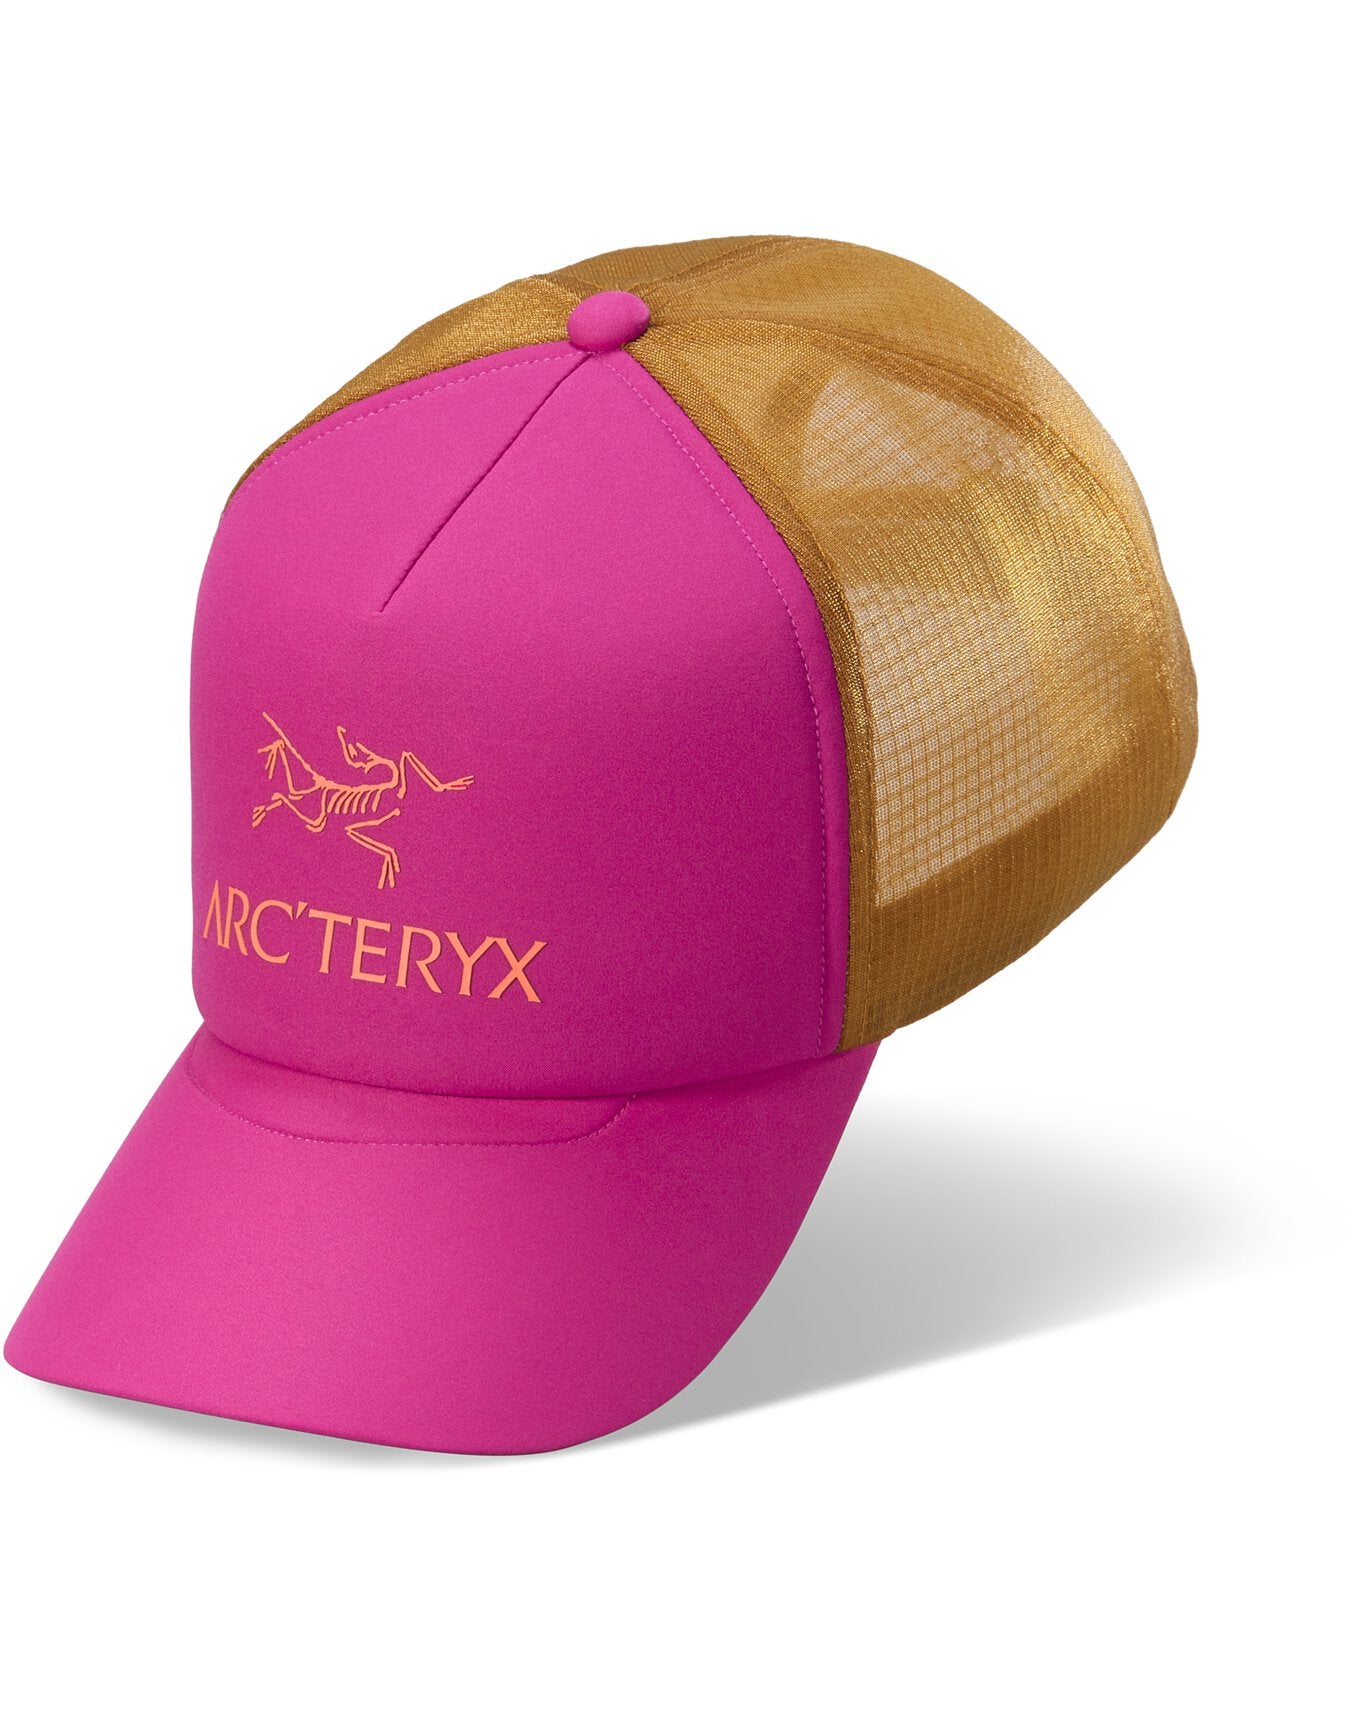 Arc'teryx Bird Curved Trucker Hat